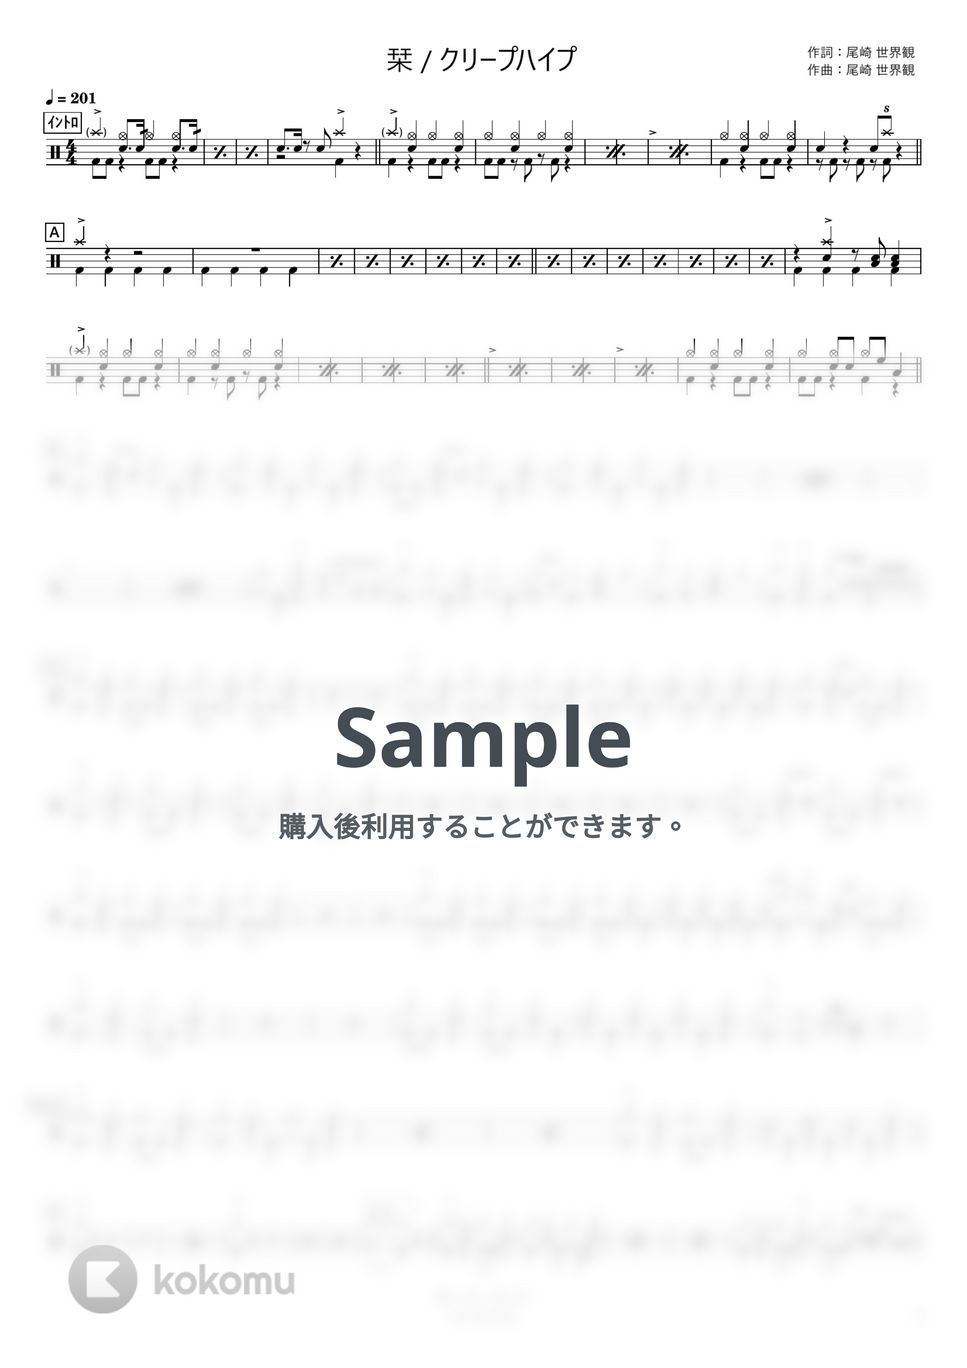 クリープハイプ - 栞 (コンパクト) by さくっとドラム